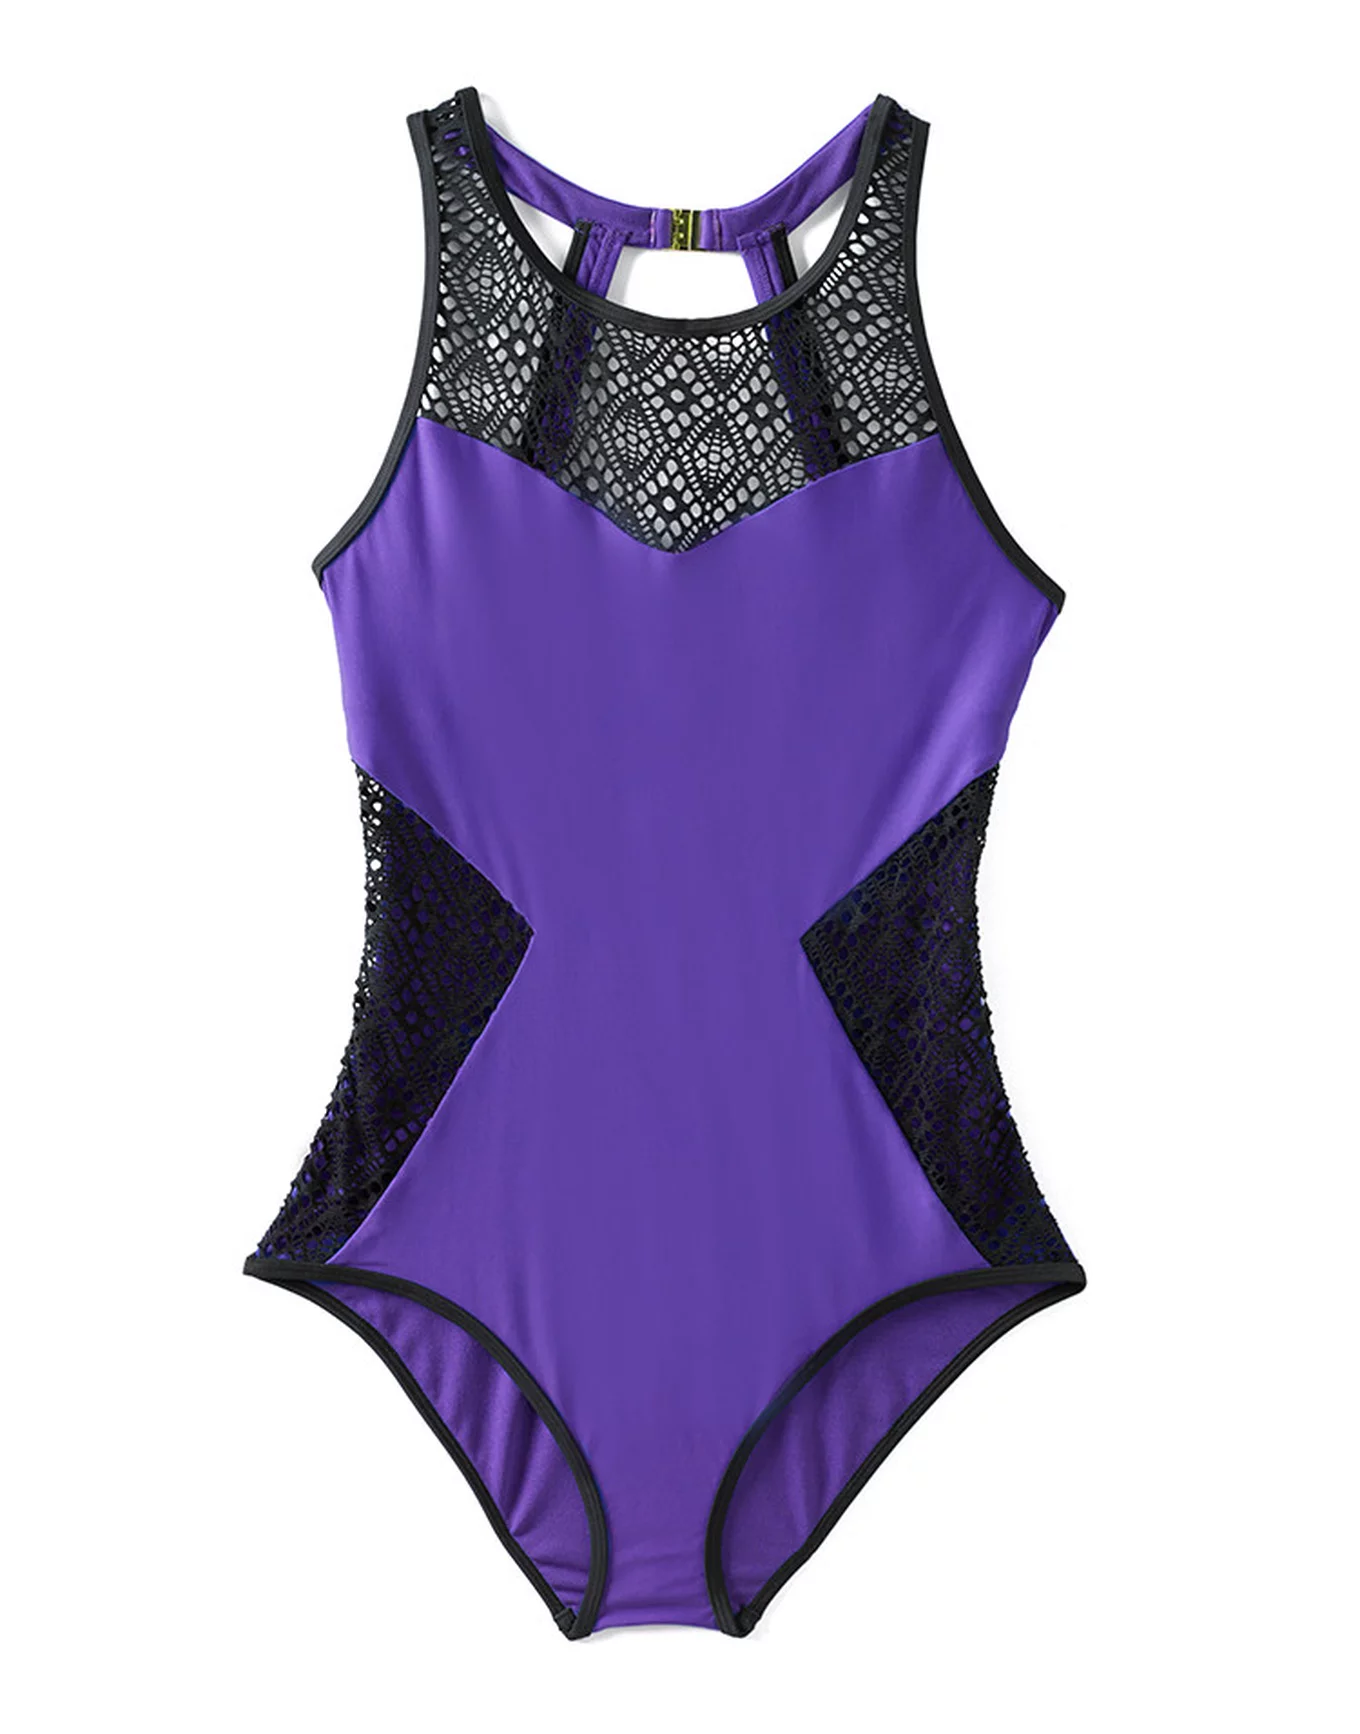 MH Swimsuit, Monokini, MH Bathing Suit, Beach Wear, Purple Earrings,  One-piece Swimsuit 